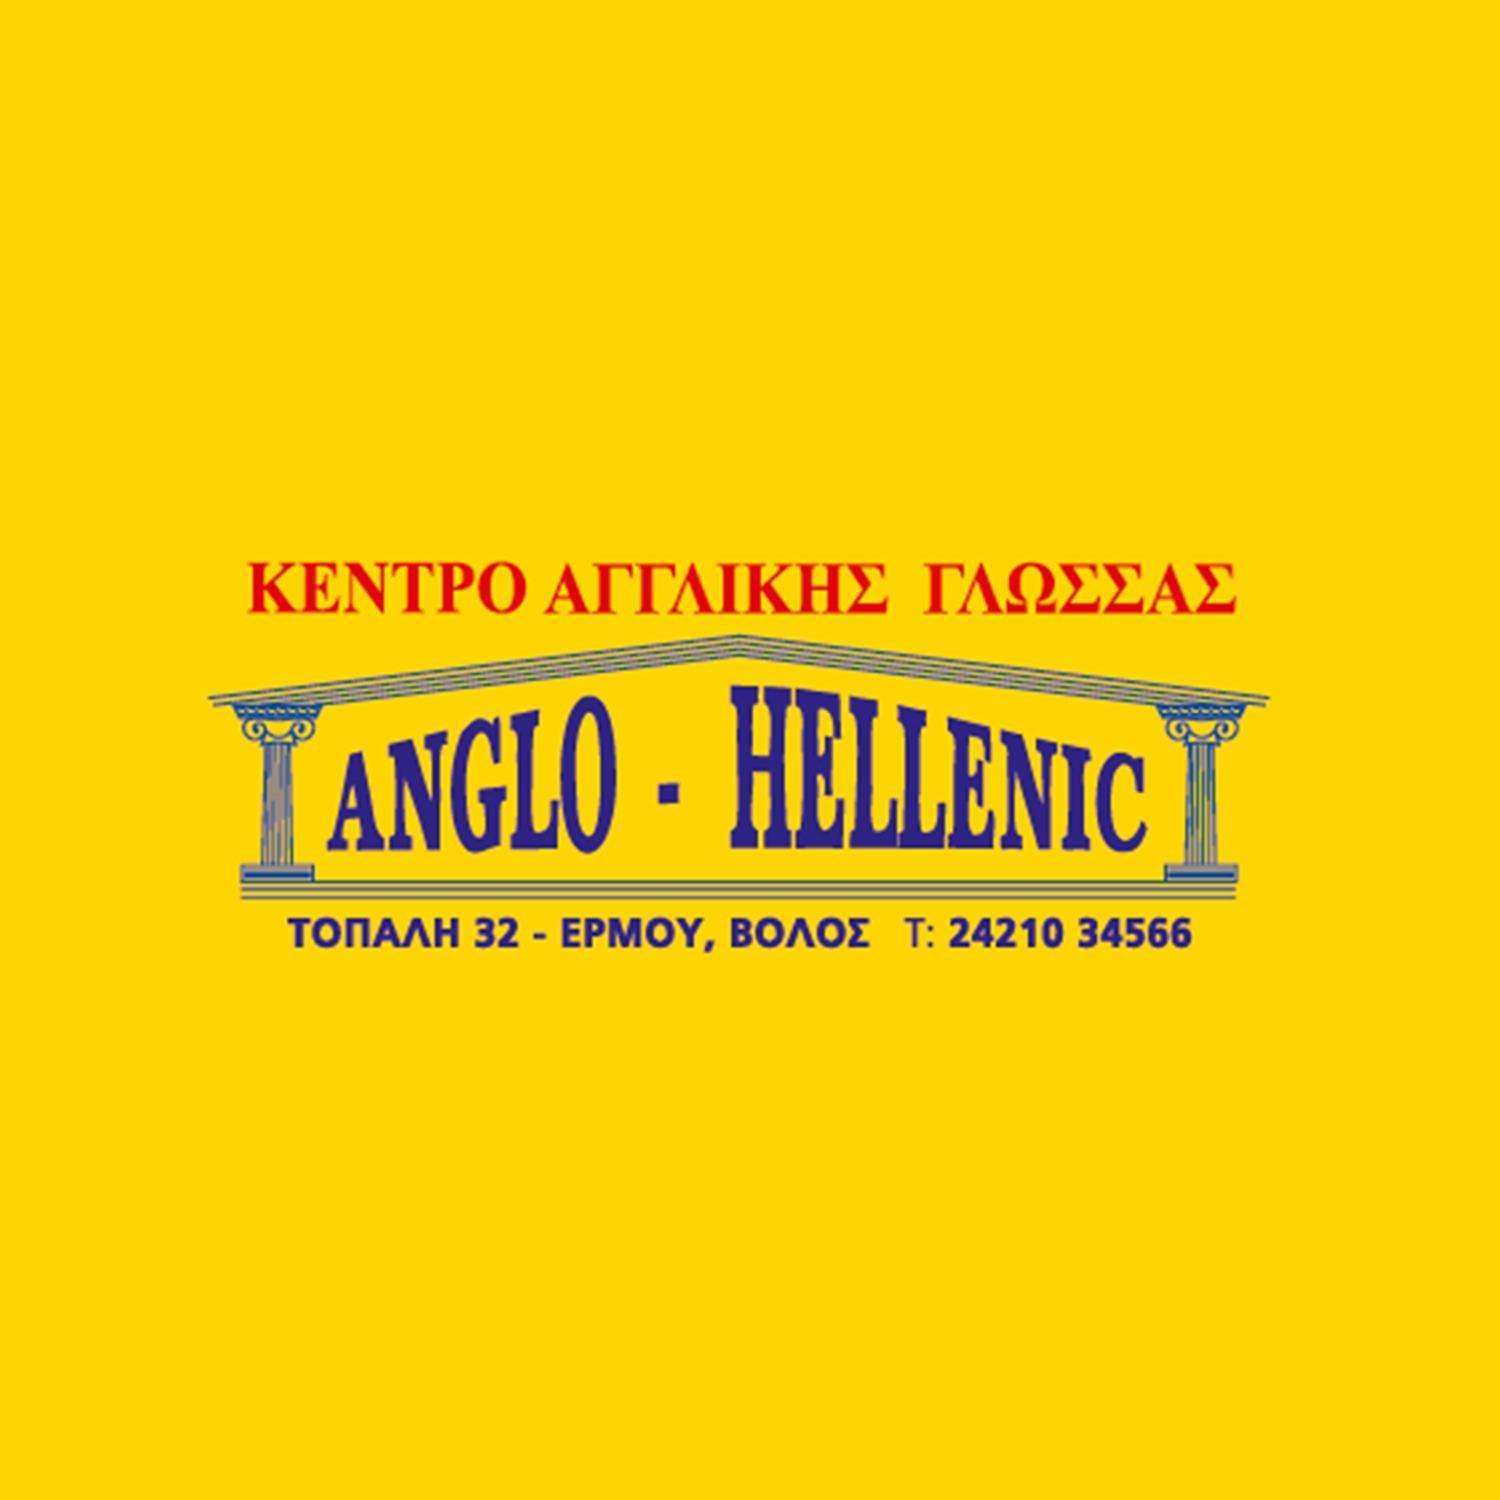 Κέντρο Ξένων Γλωσσών ANGLO - HELLENIC